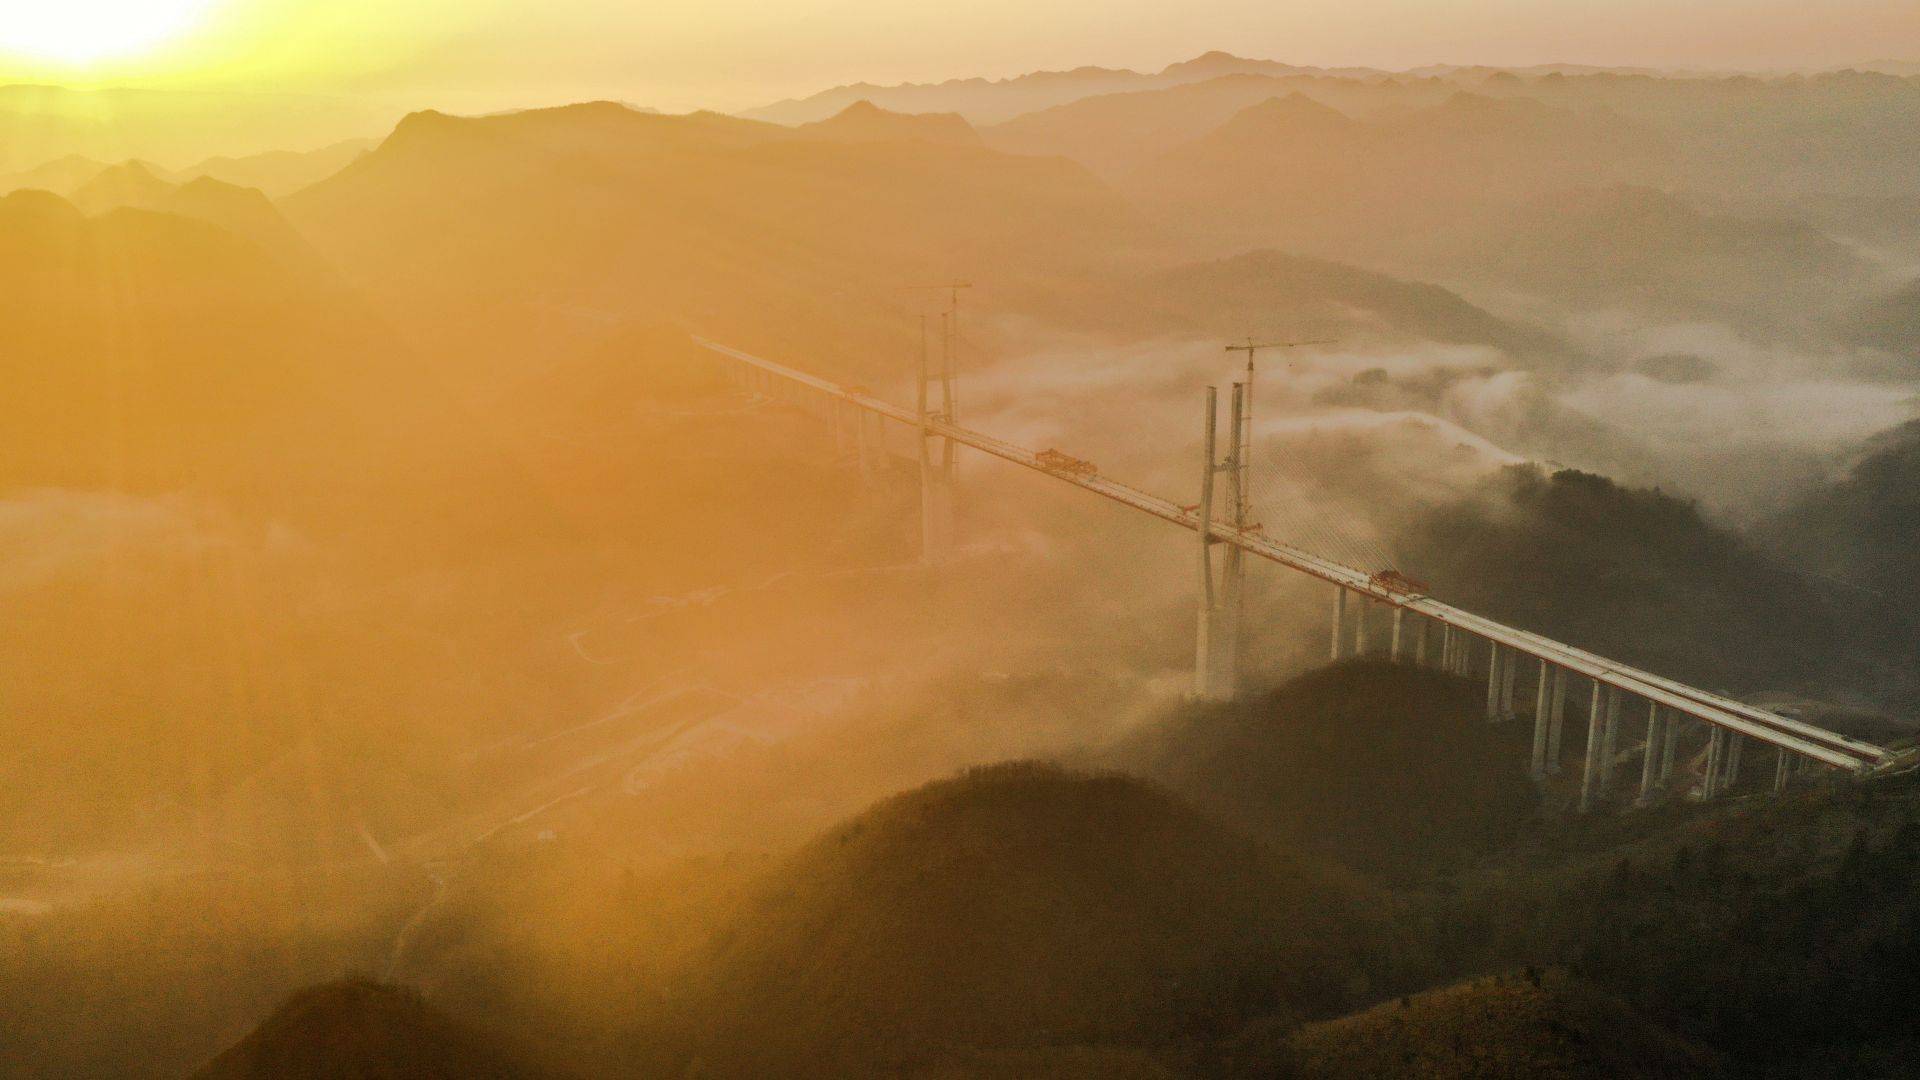 贵州都安高速云雾大桥成功合龙